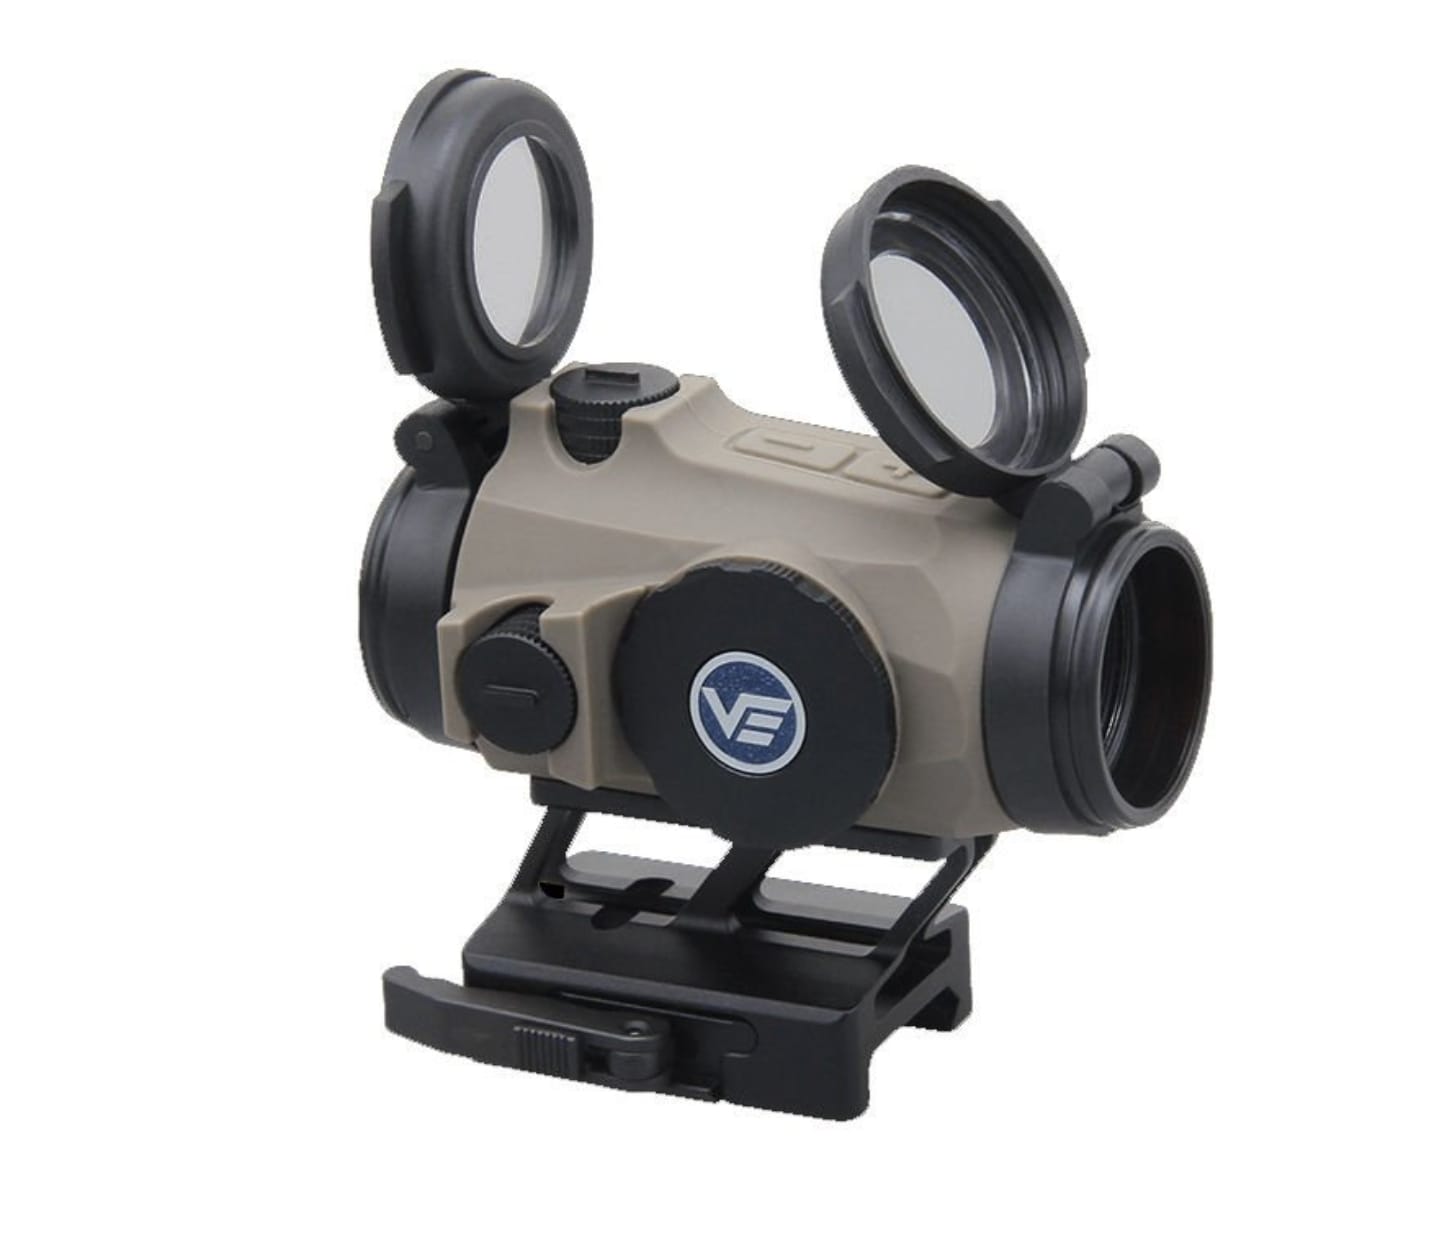 Vector Optics Maverick-IV 1x20 Mini Reflex Sight SOP RUBBER TAN